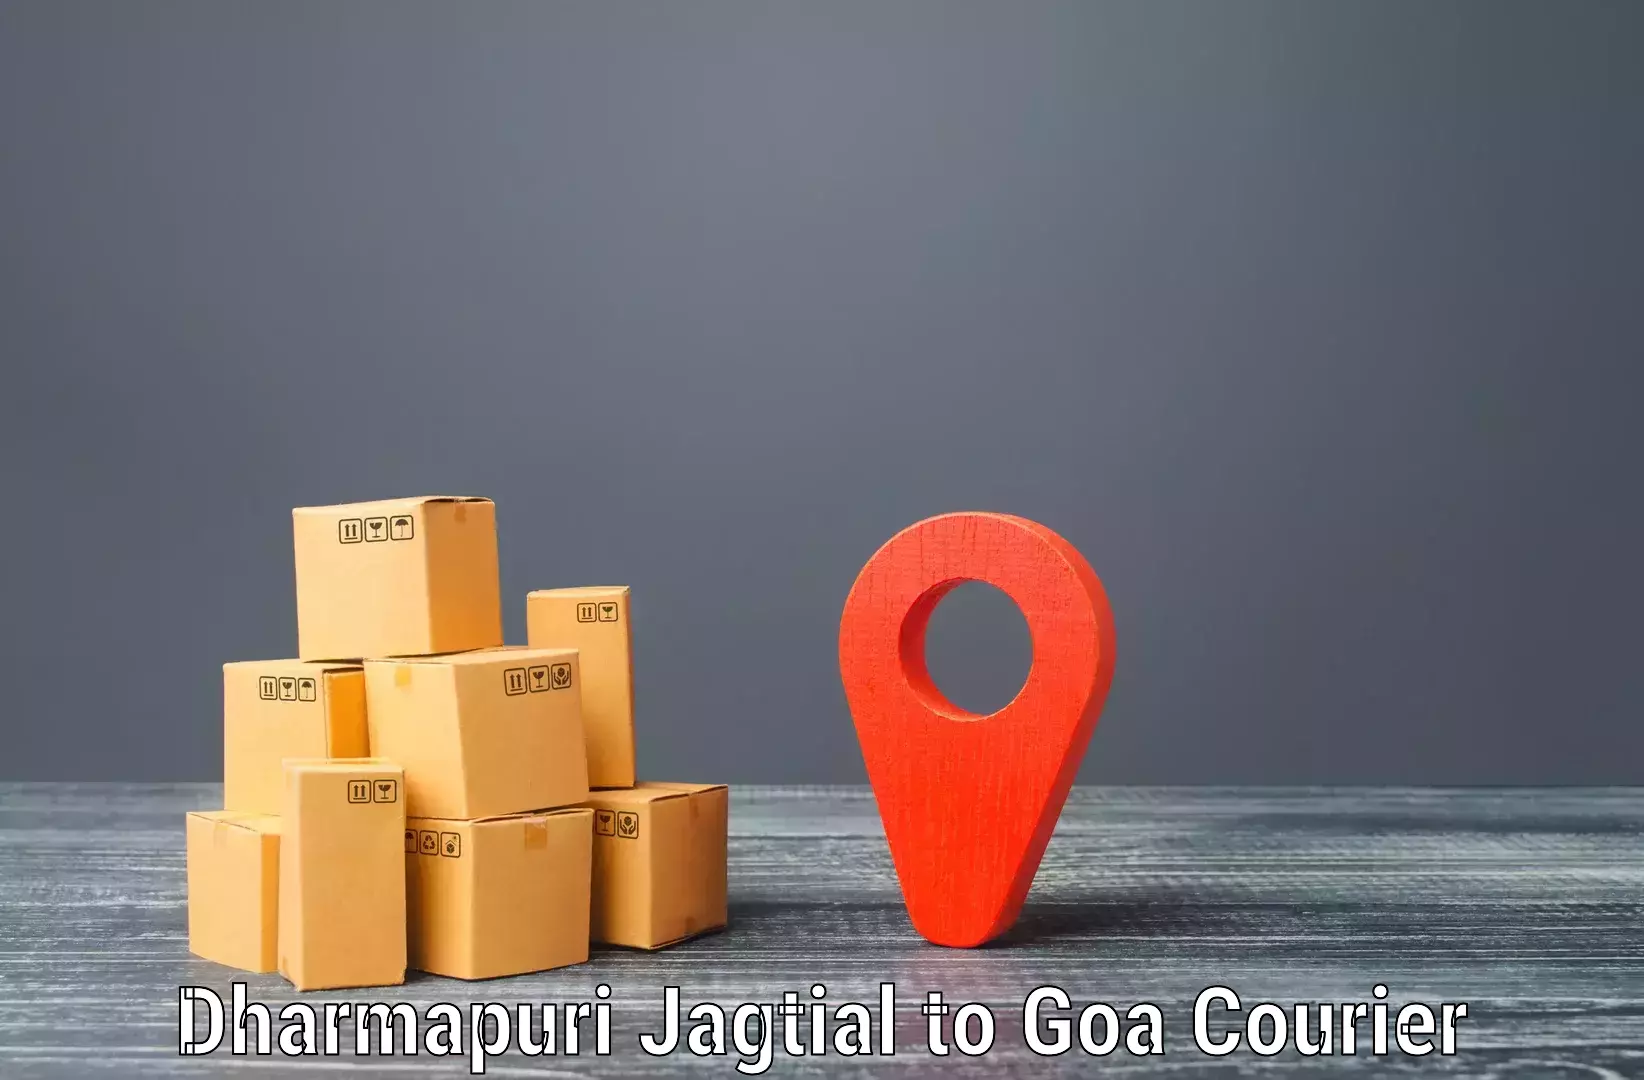 Urban courier service Dharmapuri Jagtial to Sanvordem